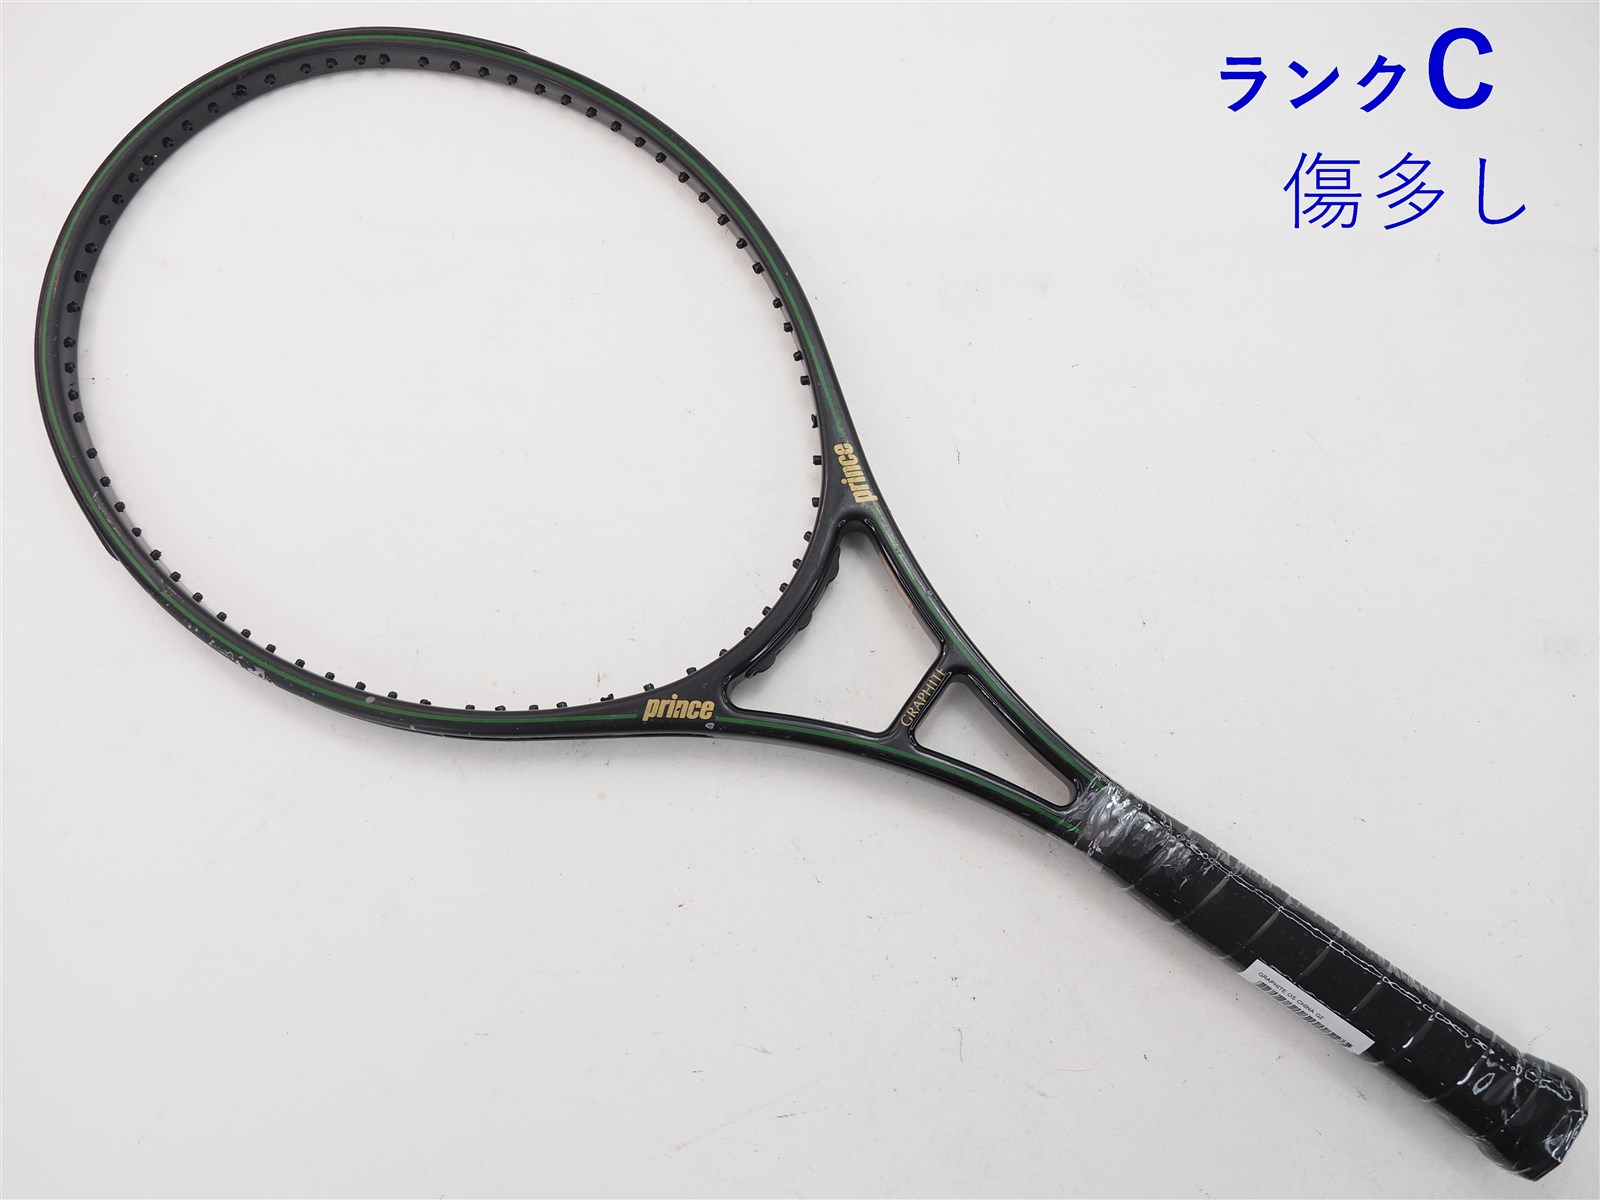 プリンス 初代グラファイト テニスラケット - スポーツ別